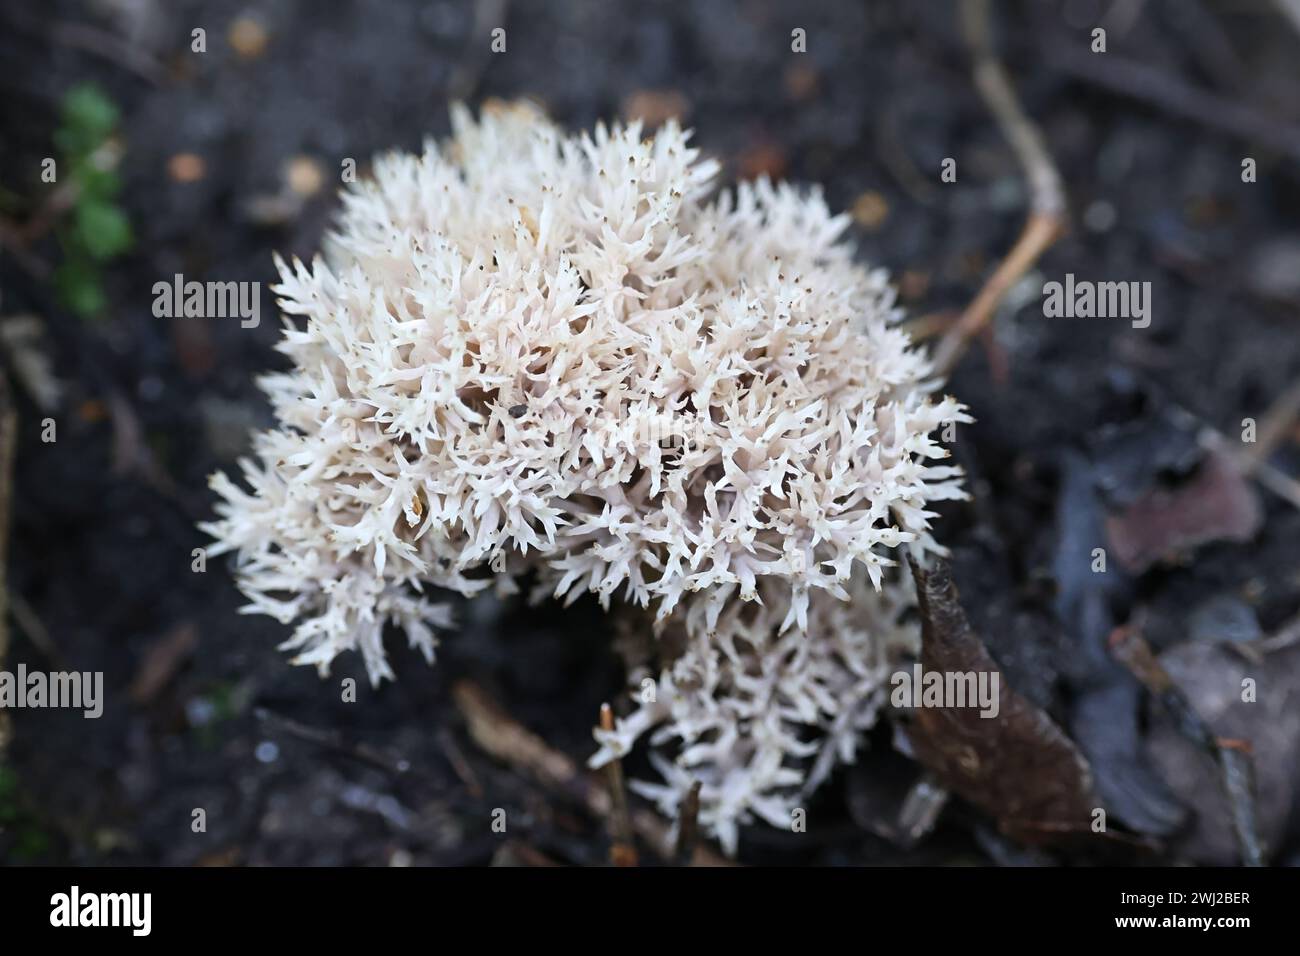 Clavulina coralloides, auch bekannt als Clavulina cristata, der weiße Korallenpilz oder der Haubenkorallenpilz, Wildpilz aus Finnland Stockfoto